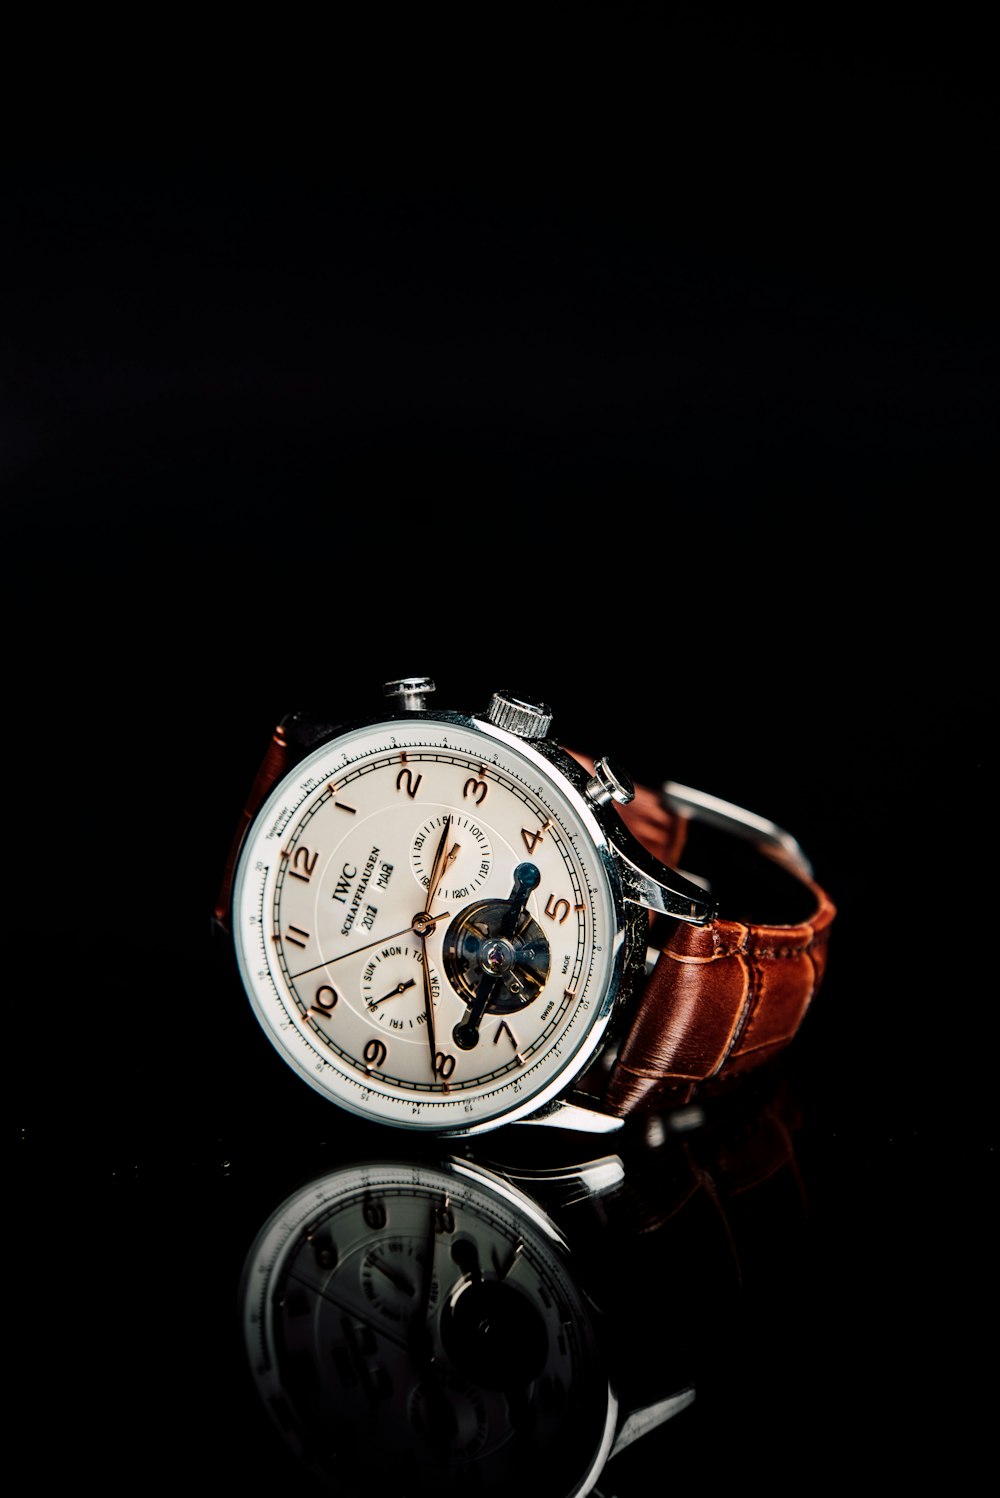 Orologio cronografo rotondo color argento con cinturino in pelle marrone